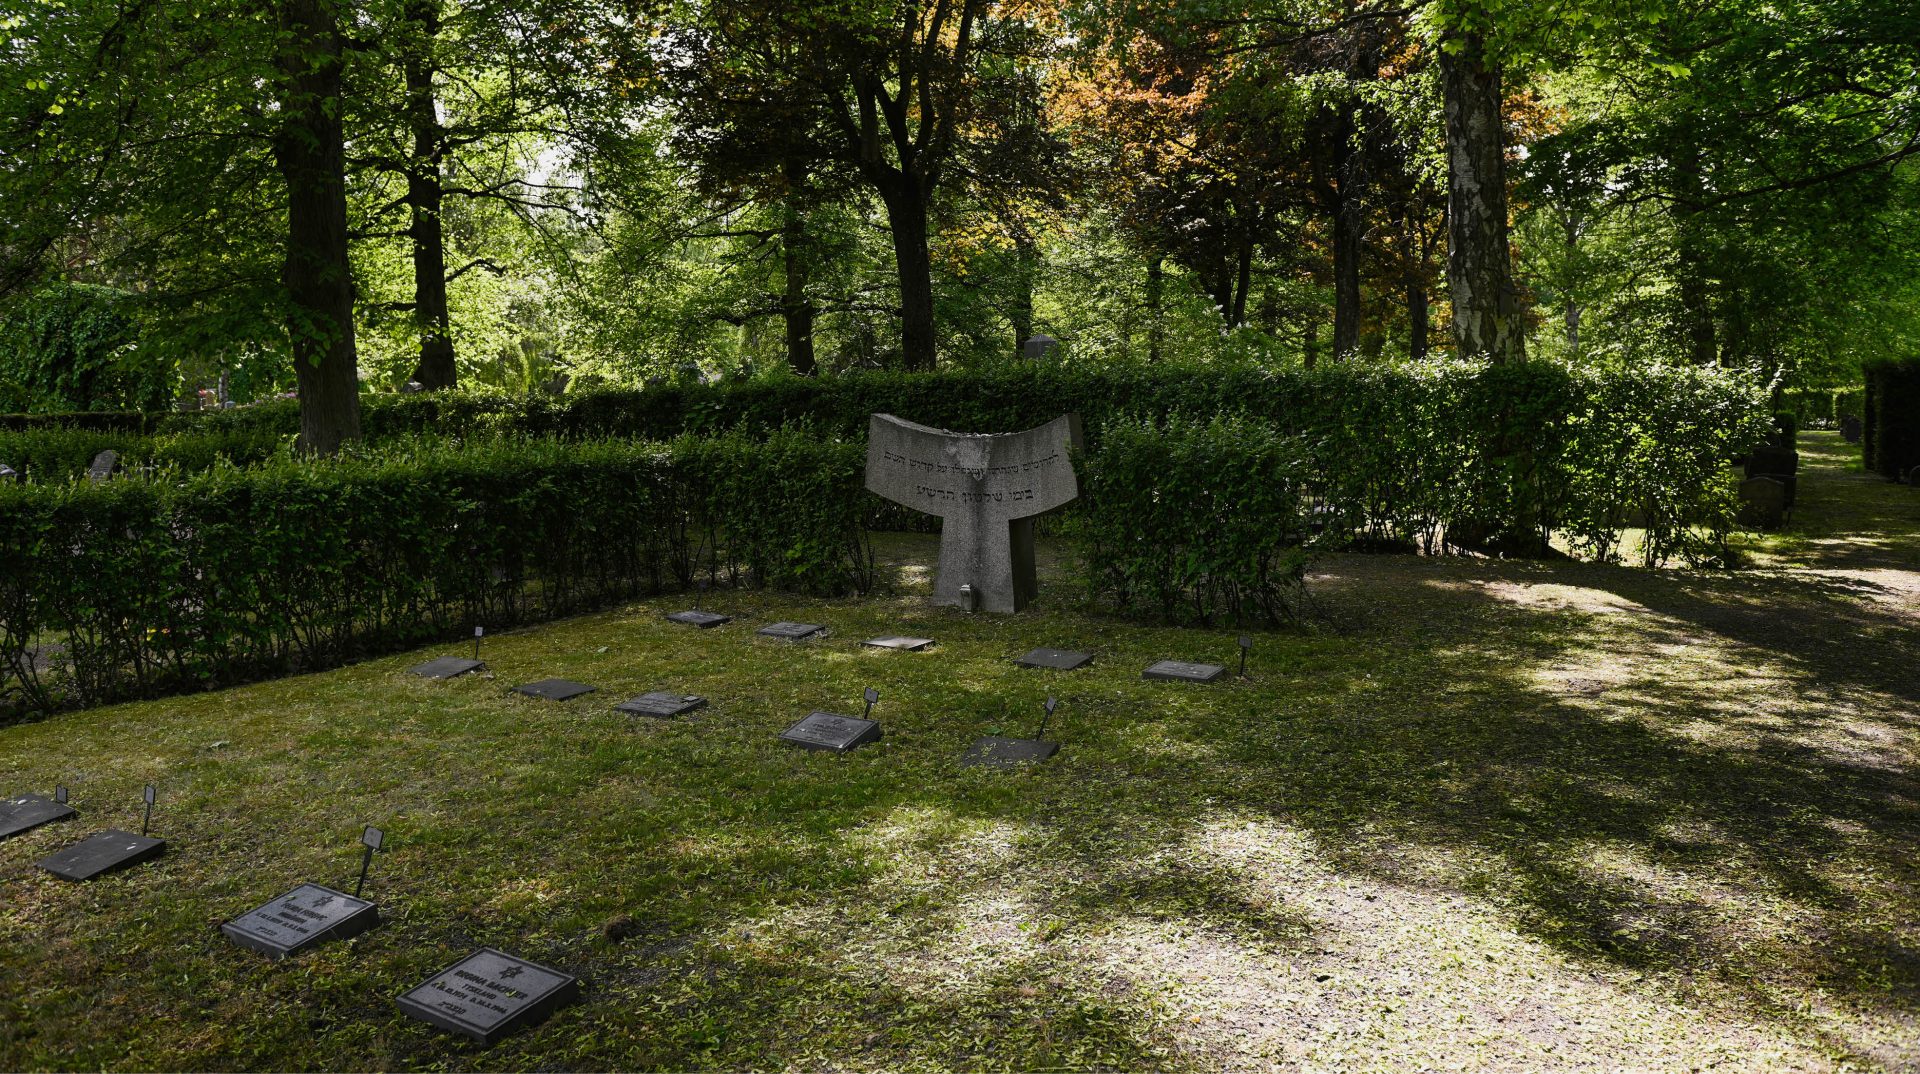 Norra judiska begravningsplatsen där gravstenar syns i förgrunden och i bakgrunden träd